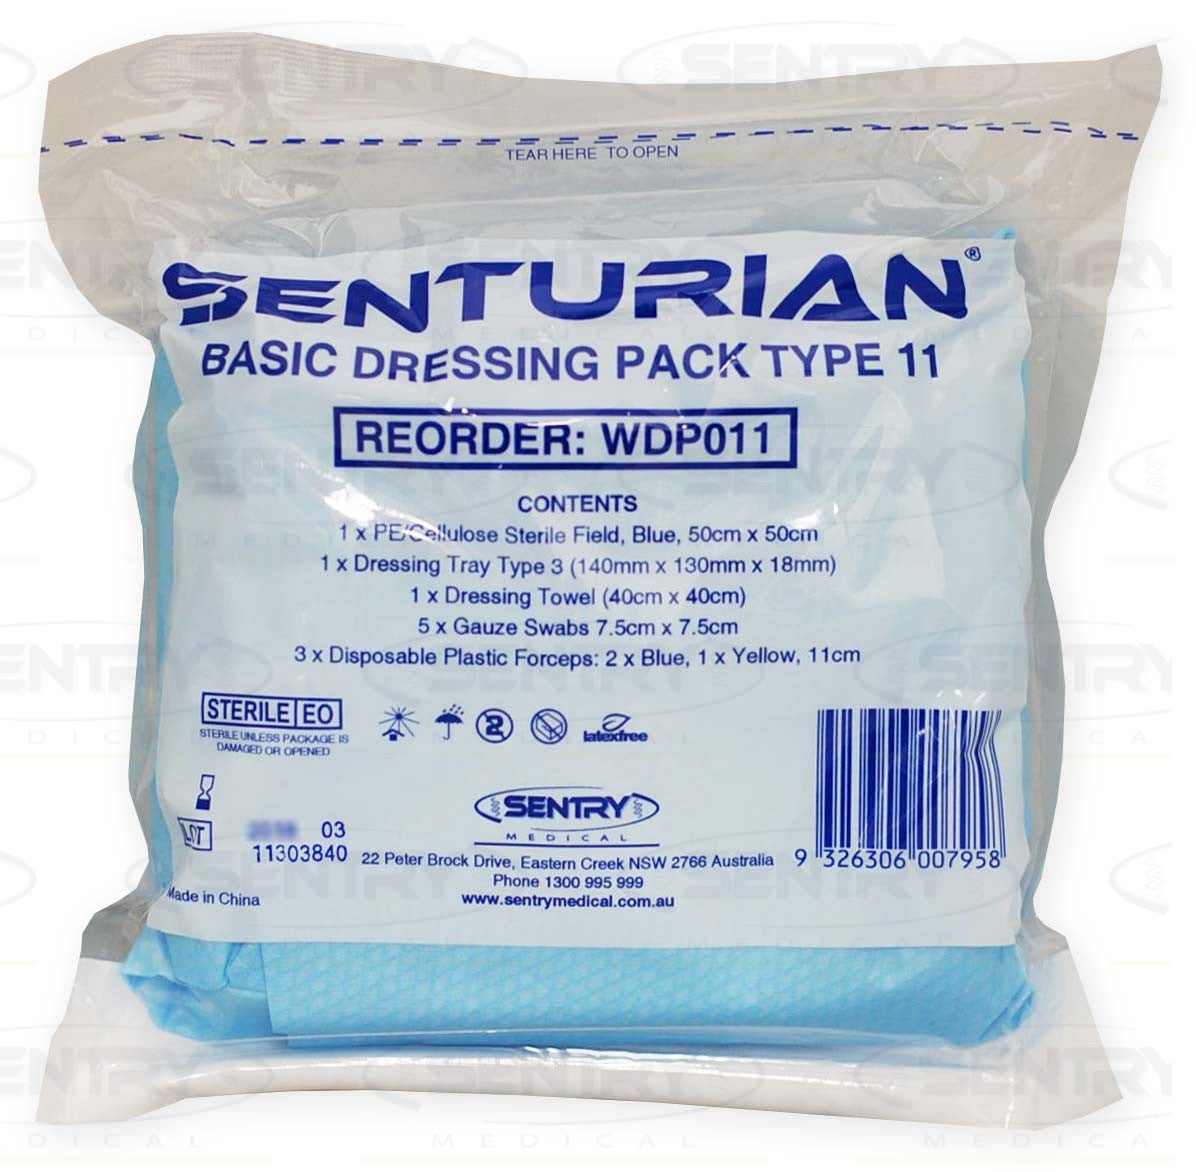 Sentry Medical Sentry Medical Senturian Basic Dressing Pack #11 Tear Pack - Each Healthcare Each 